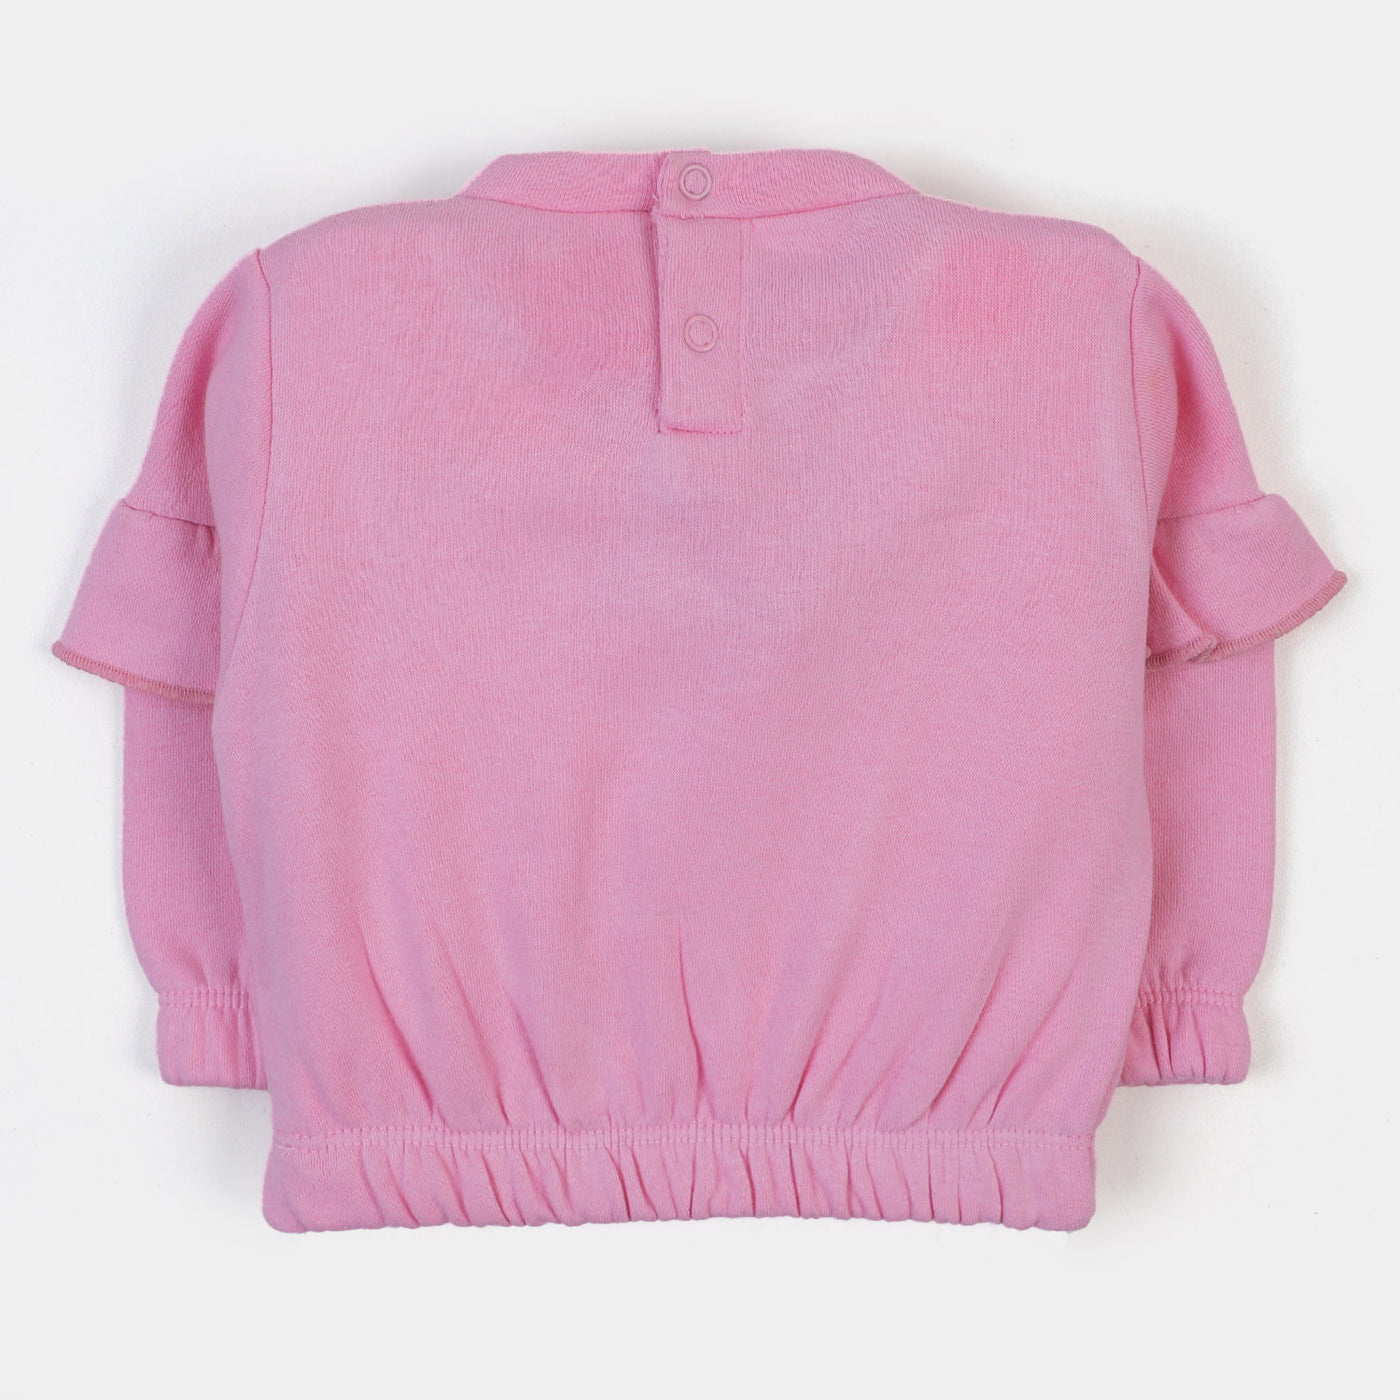 Infant Girls Sweatshirt Character-Pink